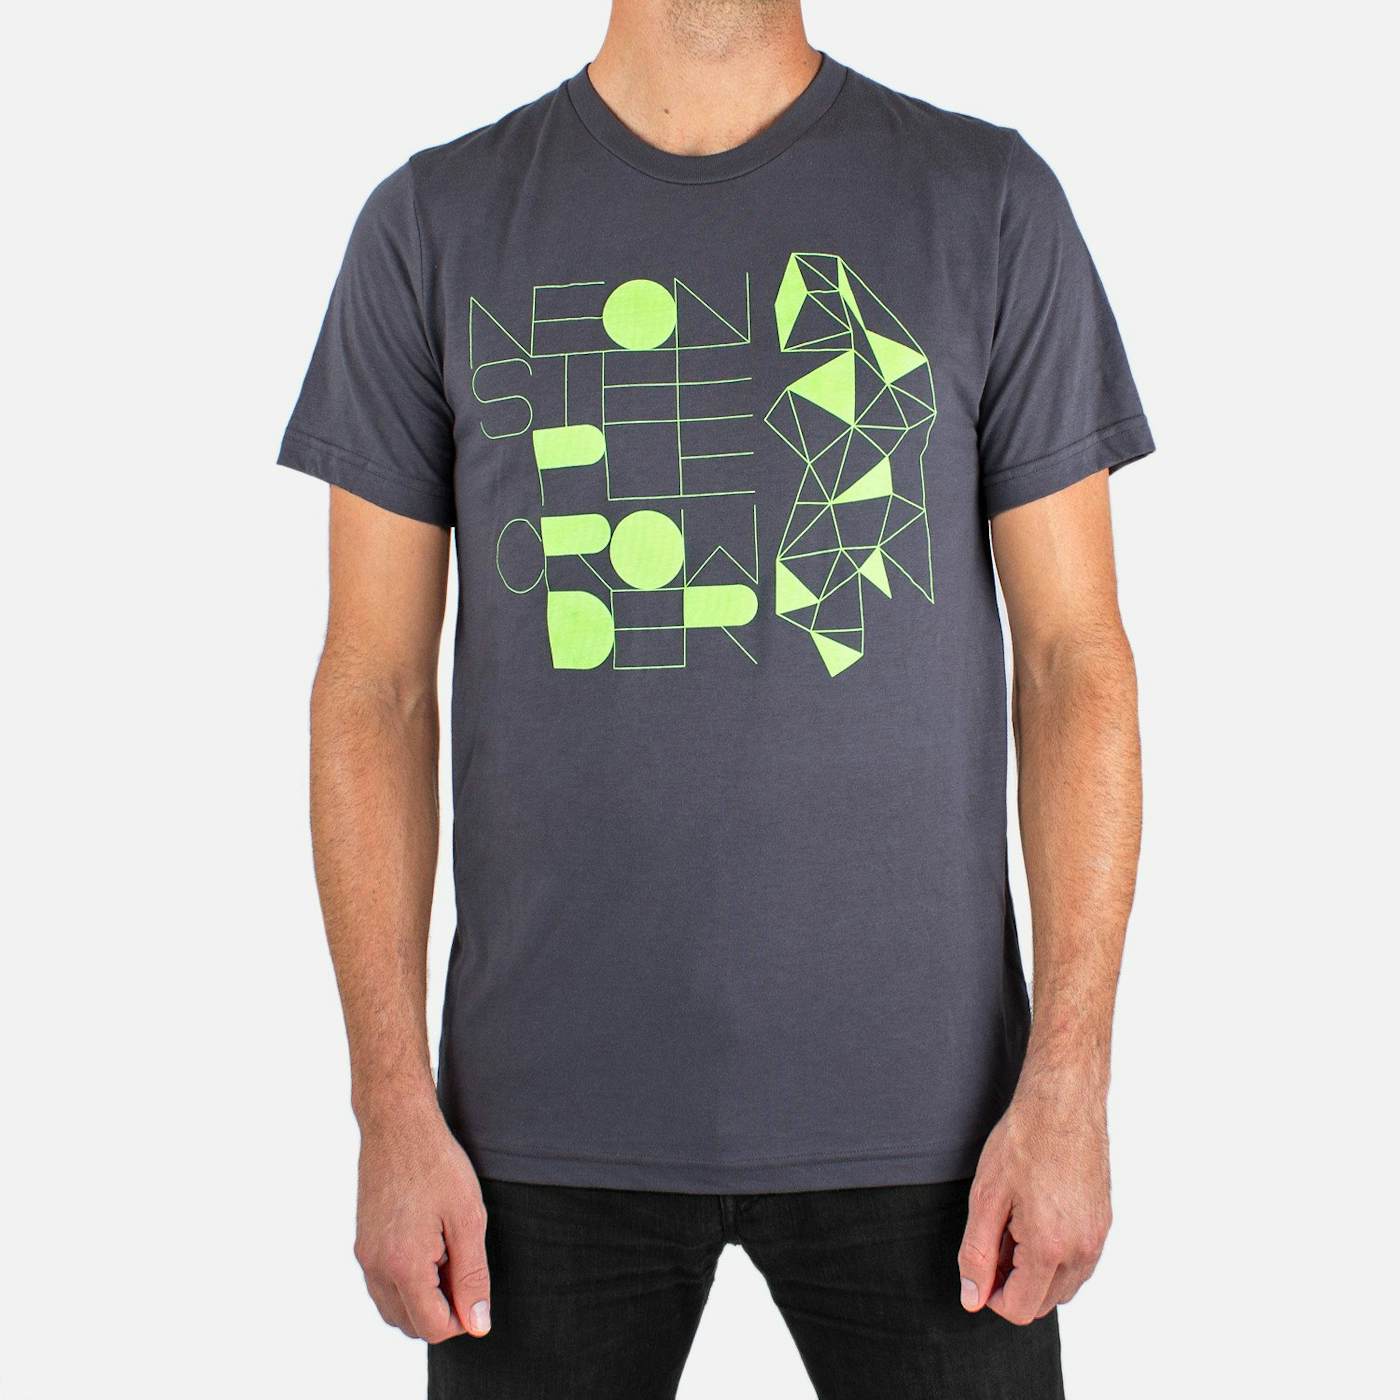 Crowder 'Neon Steeple' T-Shirt